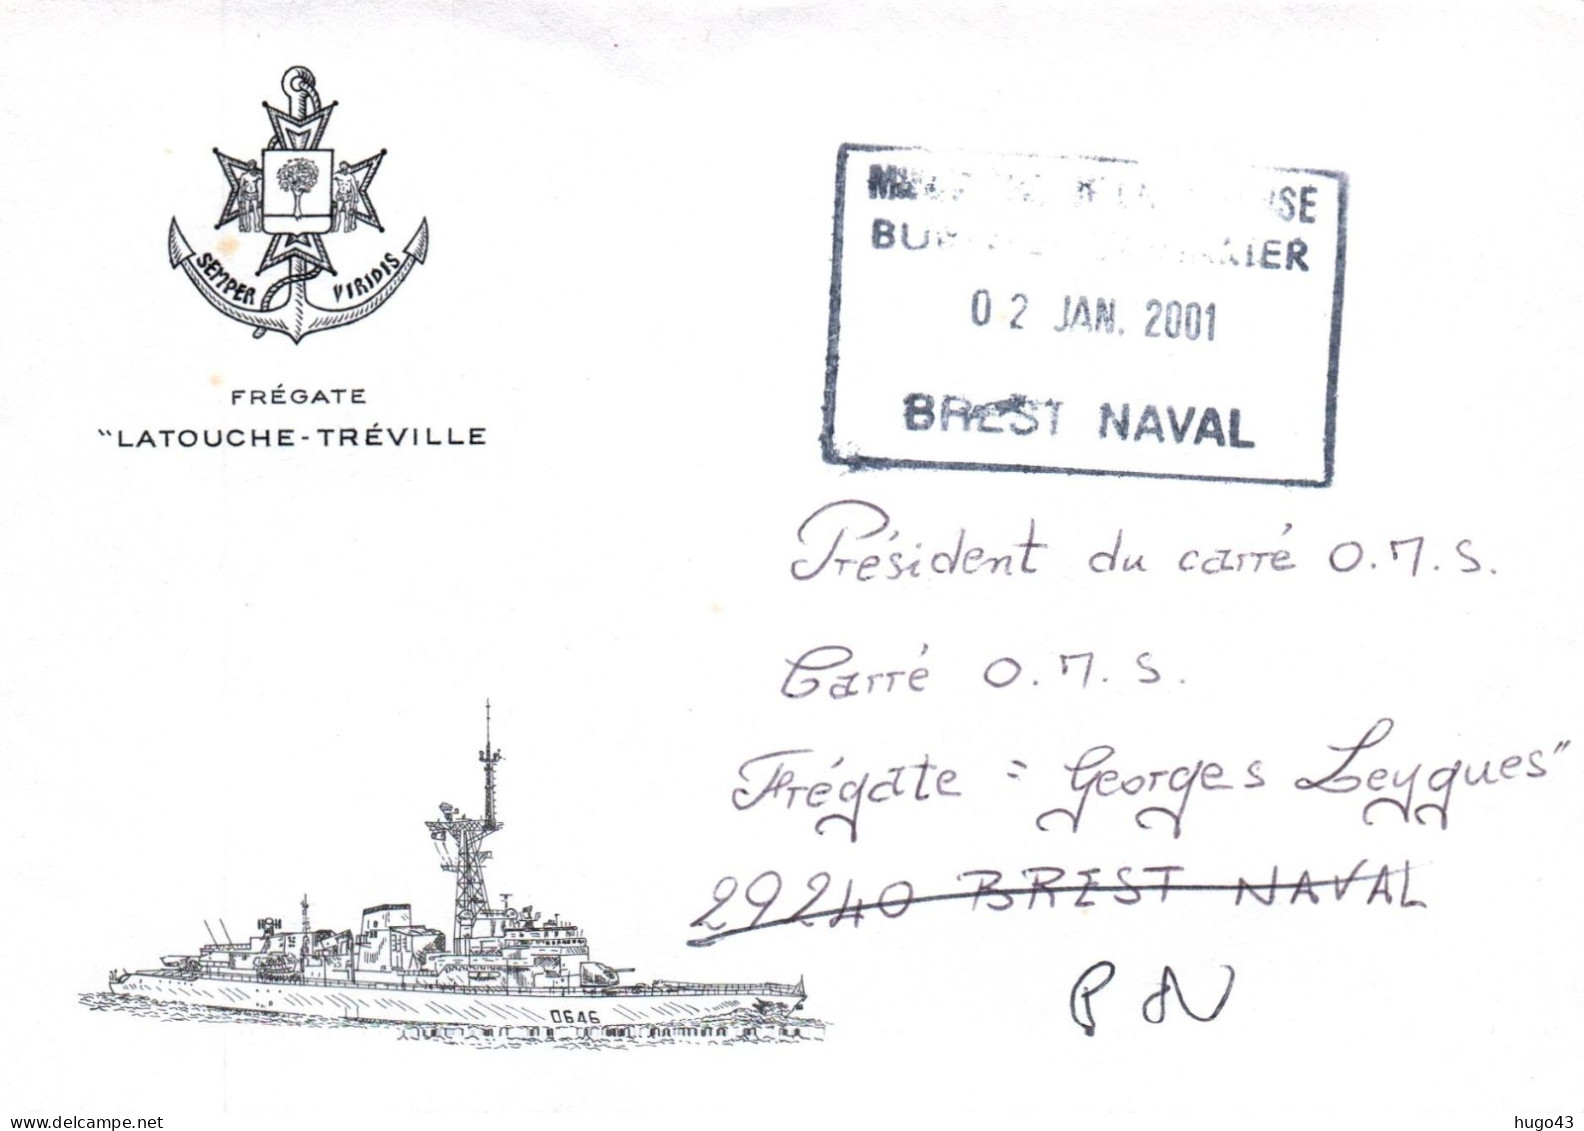 ENVELOPPE AVEC CACHET OFFICIEL FREGATE LATOUCHE TREVILLE - BREST NAVAL LE 02/01/2001 - Naval Post